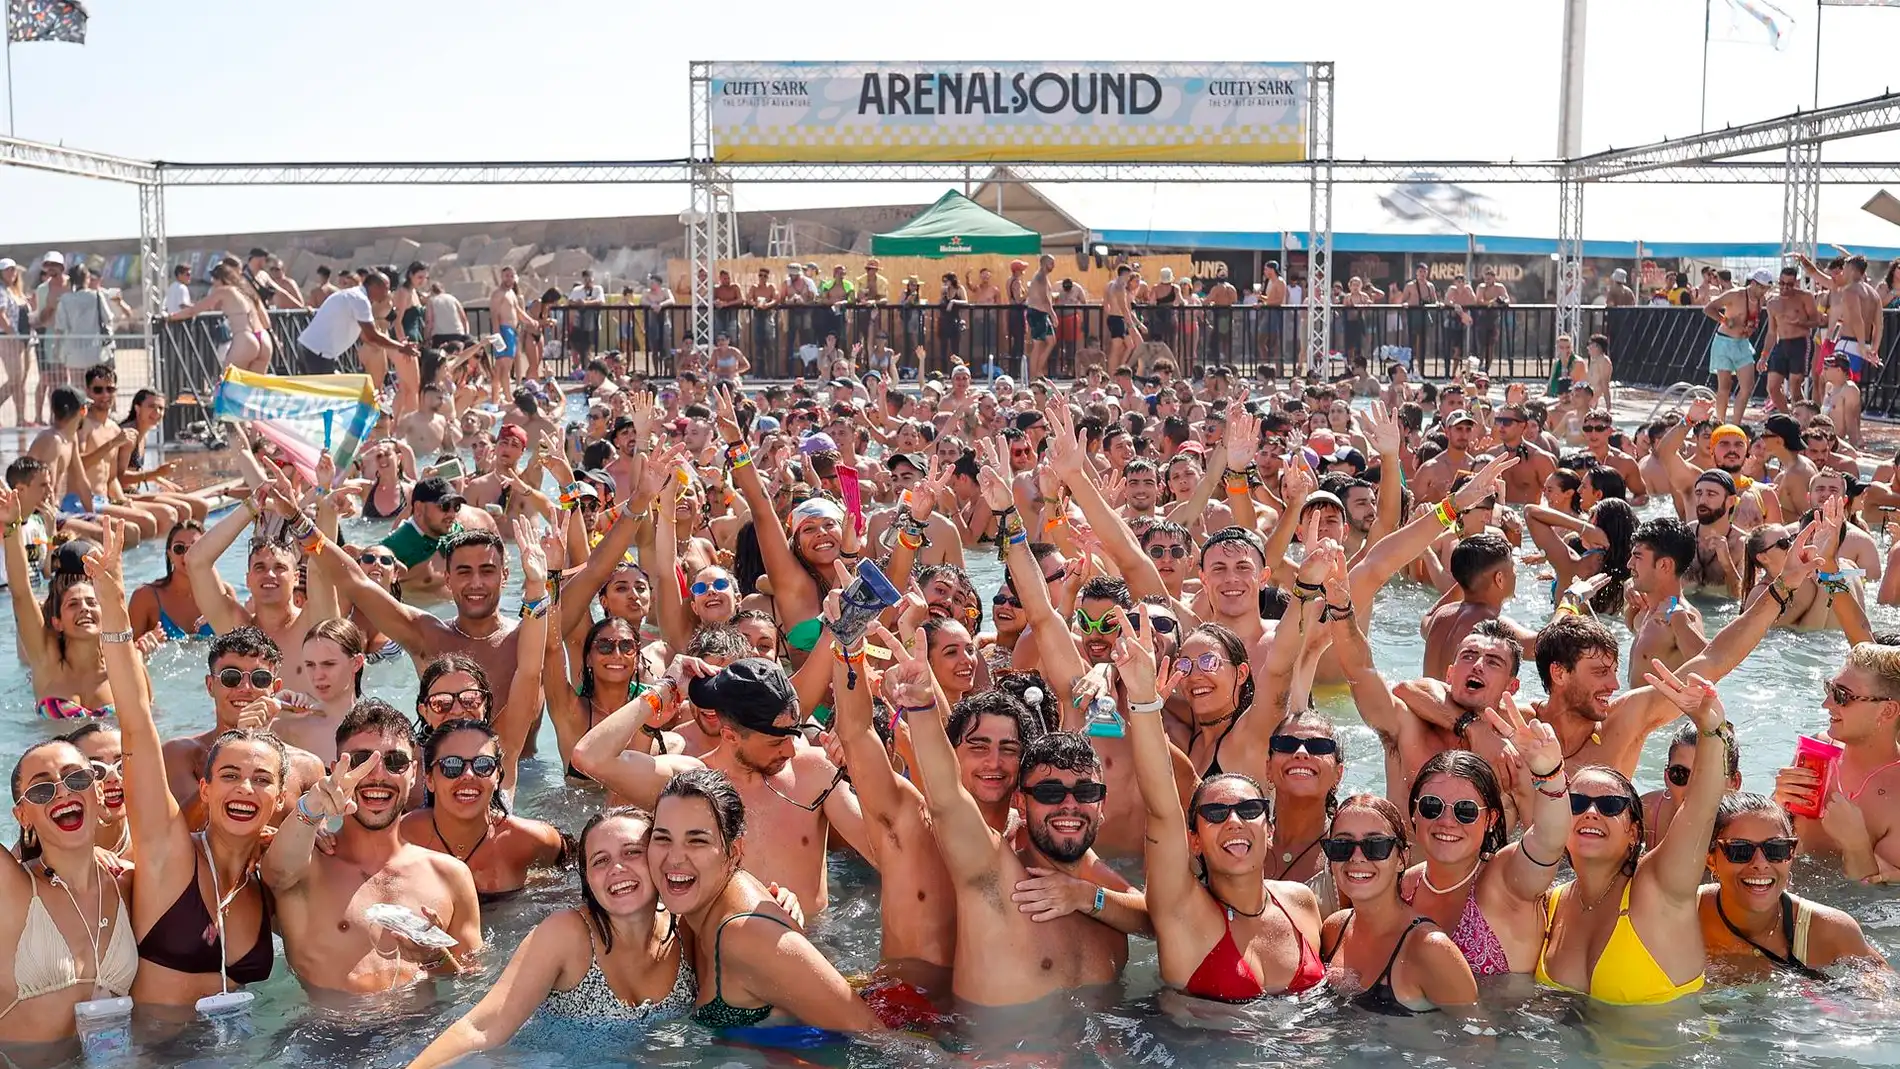 Decenas de jóvenes disfrutan de la famosa piscina del festival Arenal Sound